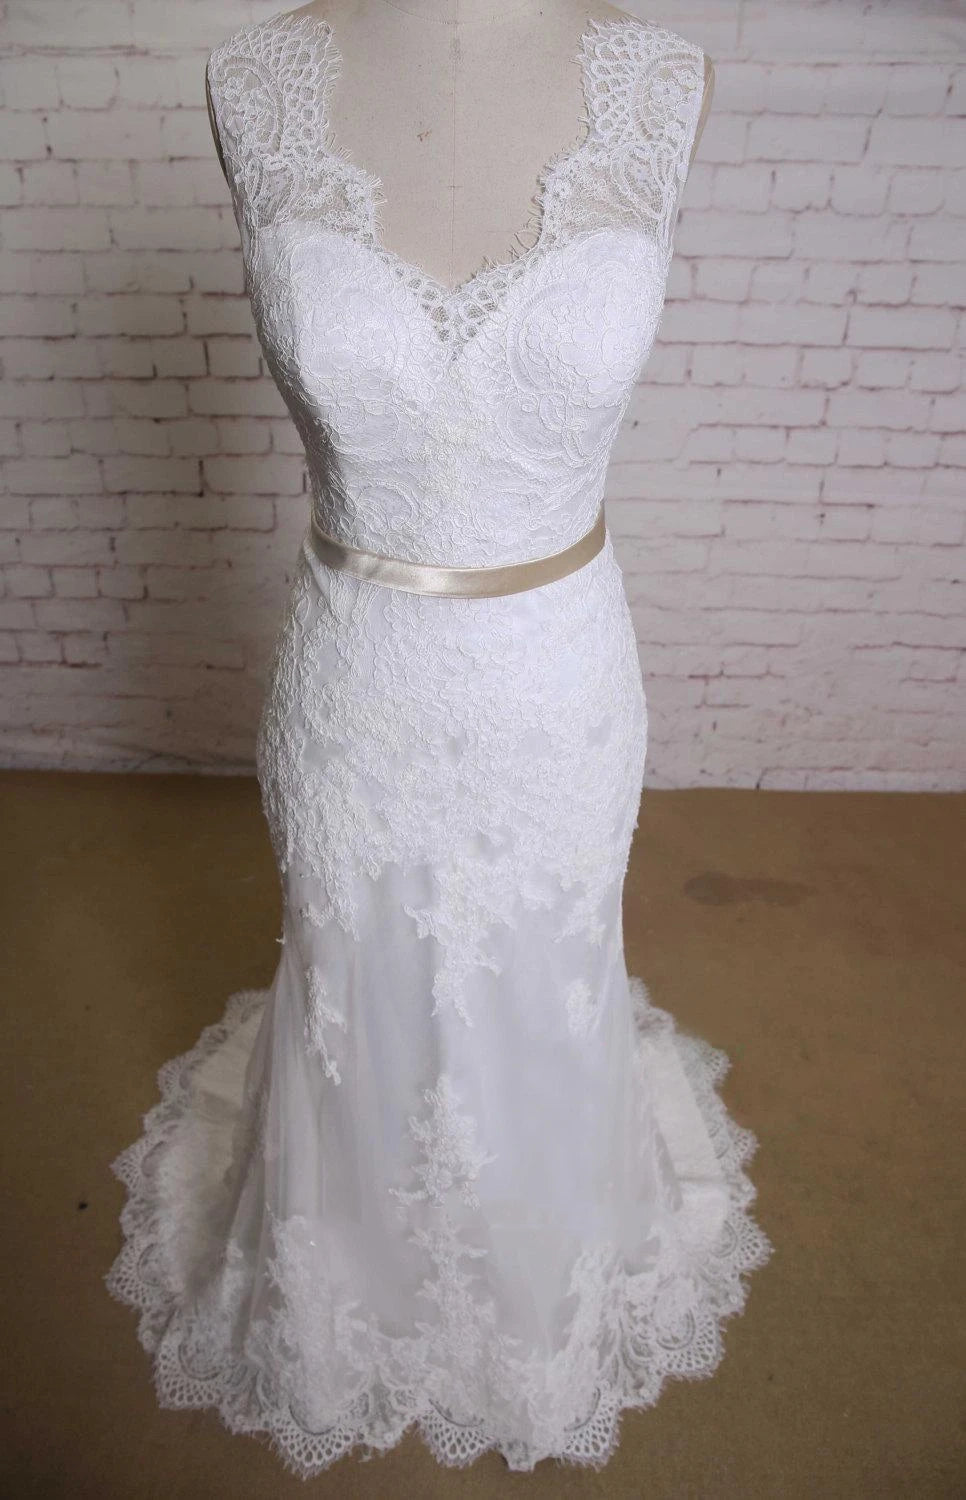 V-Neck Sleeveless Lace Mermaid Wedding Dress With Satin Sash